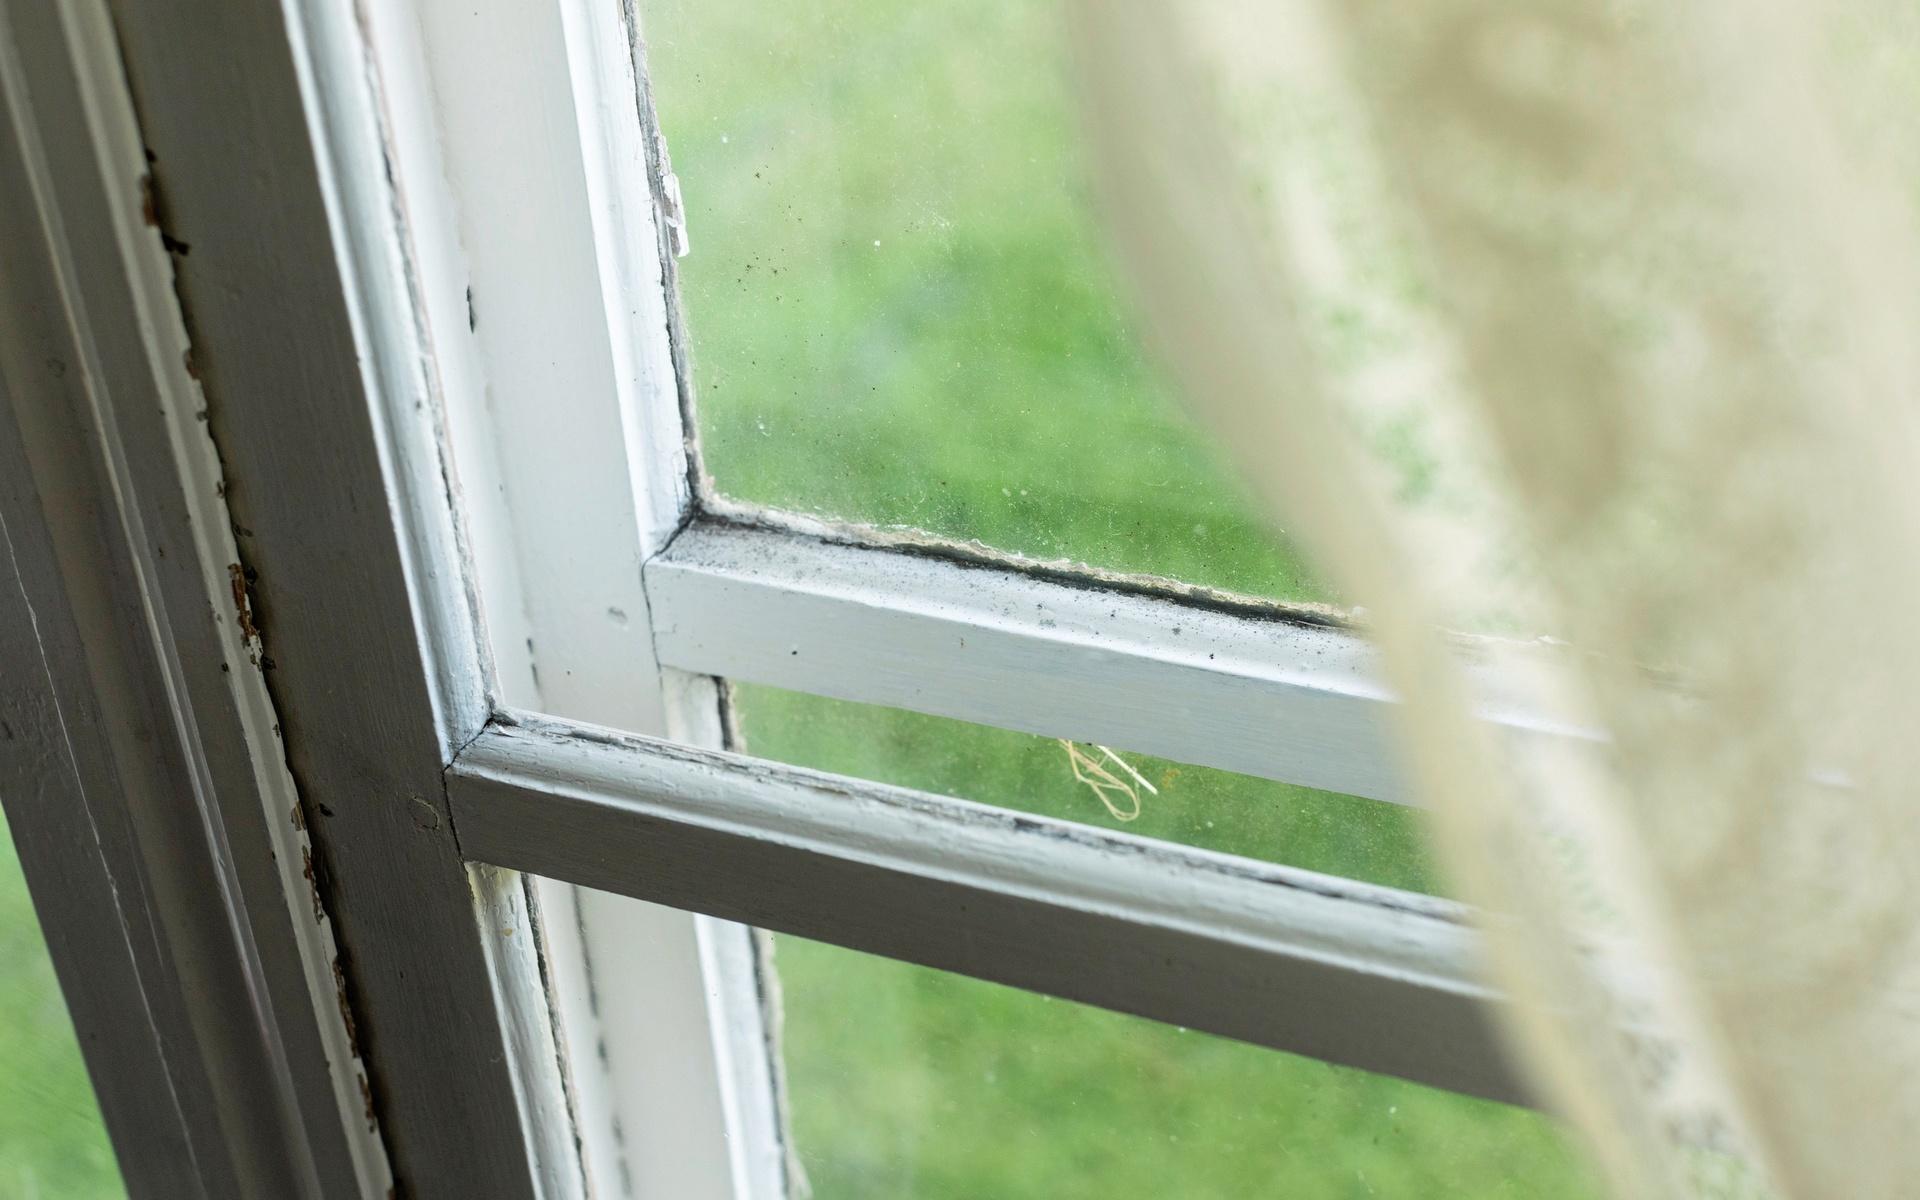 Flera av fönstren är unika. Istället för normala fönster med en fals för fönsterkitt, sitter glasrutan i ett tunt hyvlat spår, så kallat spårfönster. ”Och trots 170 år på nacken är det fortfarande i fint skick”.